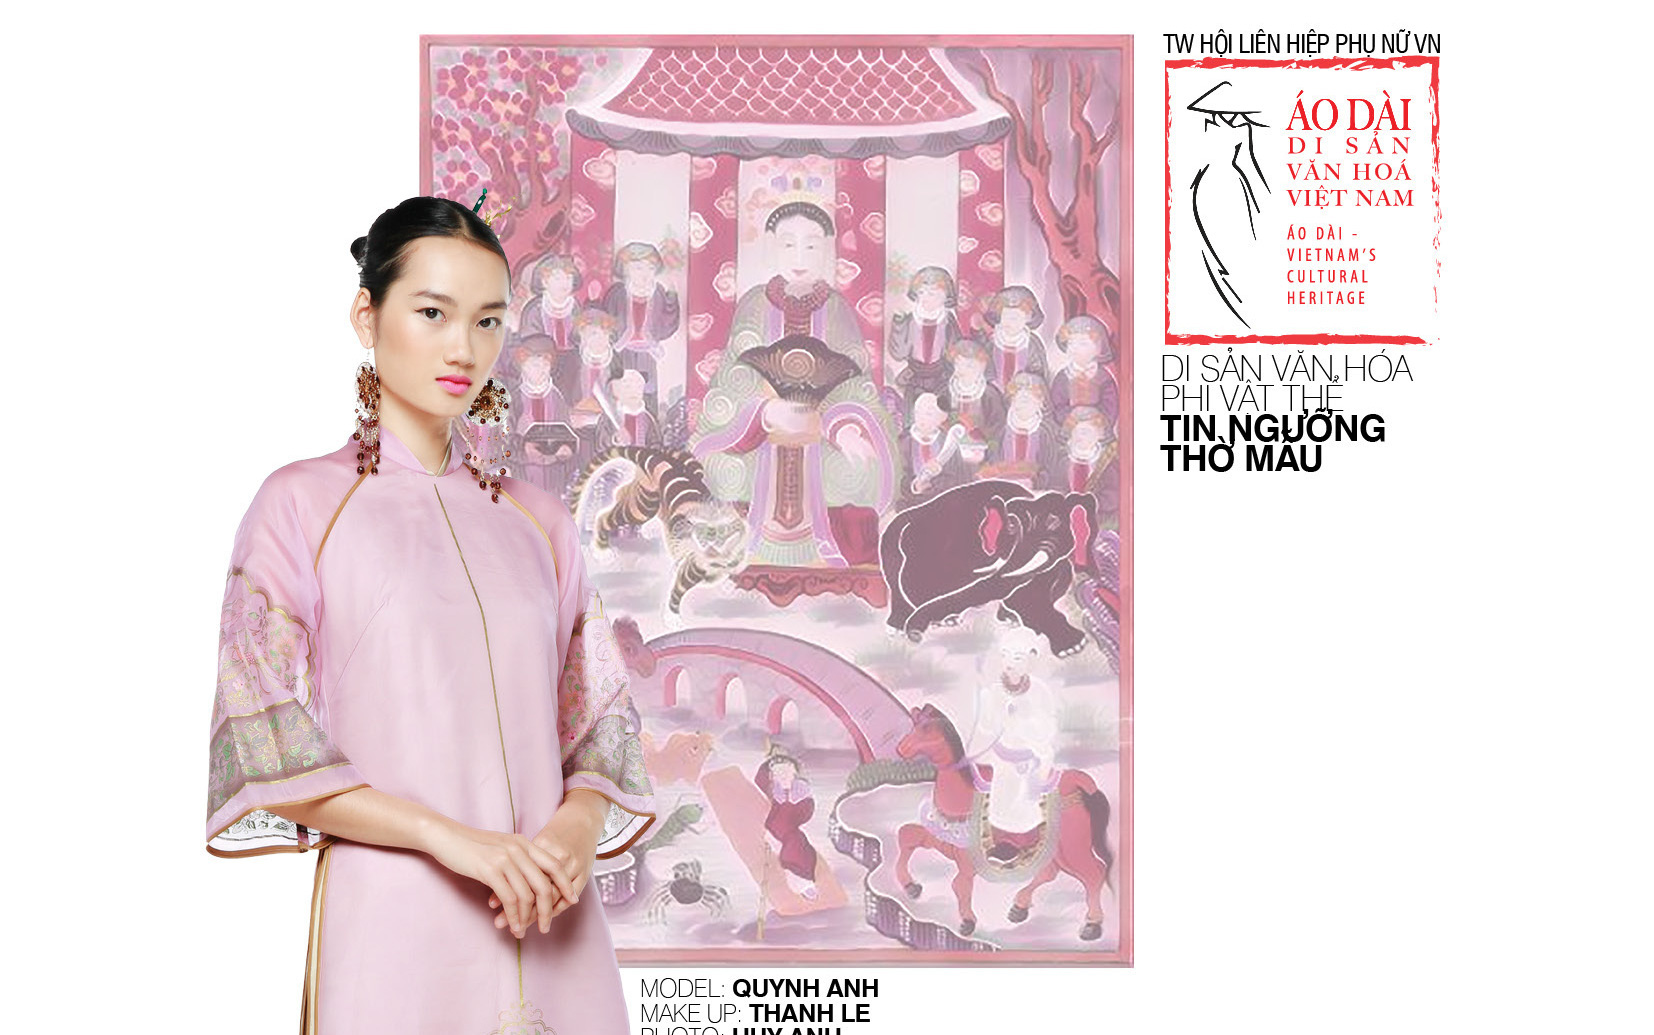 Trình diễn hơn 1000 mẫu Áo Dài mang hình ảnh Di sản văn hóa thế giới của Việt Nam tại Văn Miếu, Quốc Tử Giám